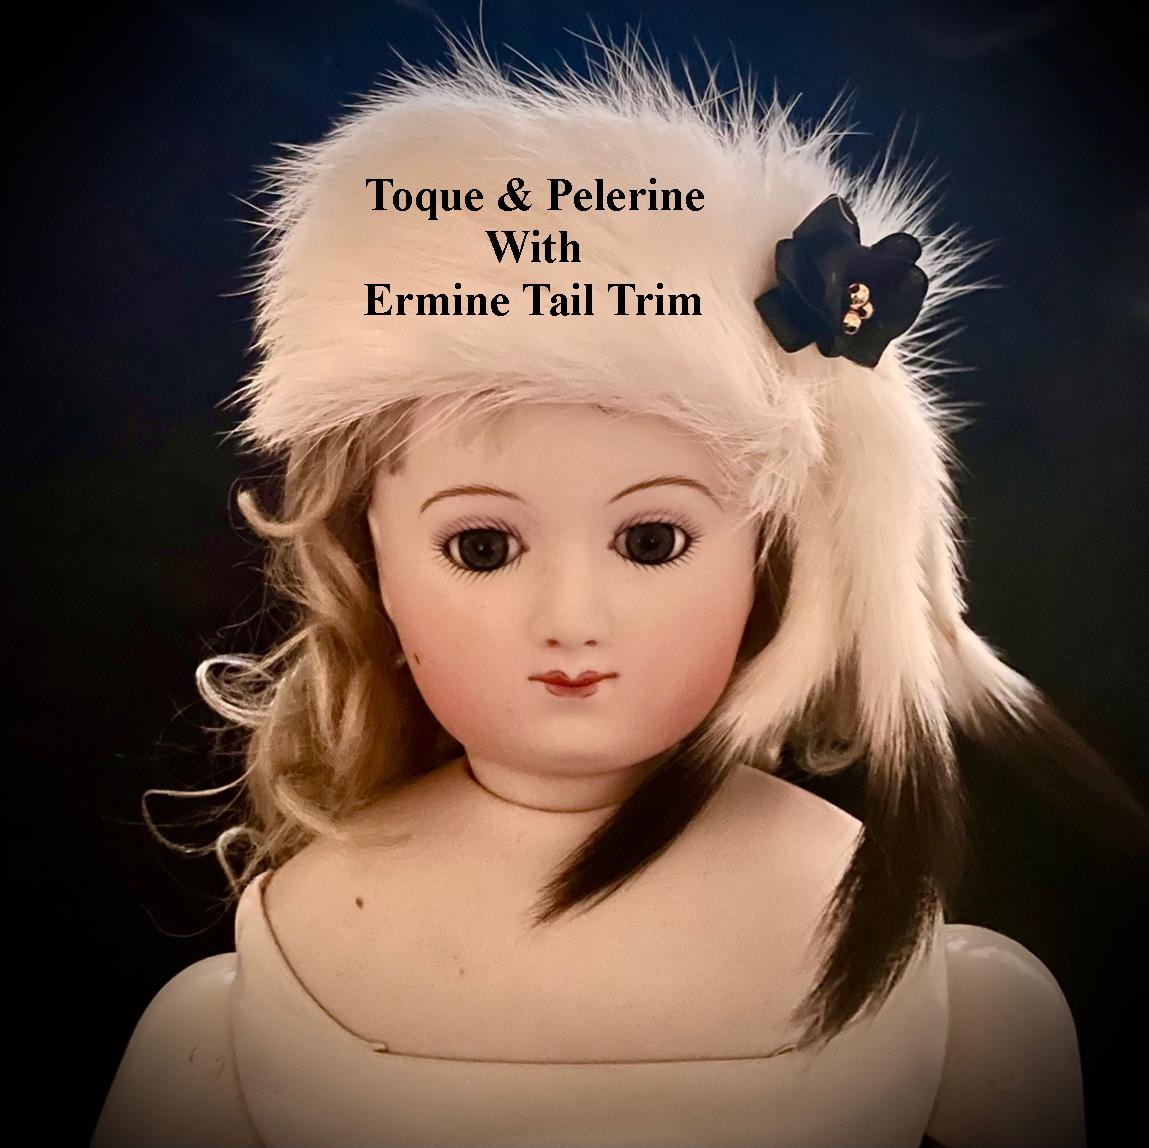 Toque & Pelerine with Ermine Tail Trim